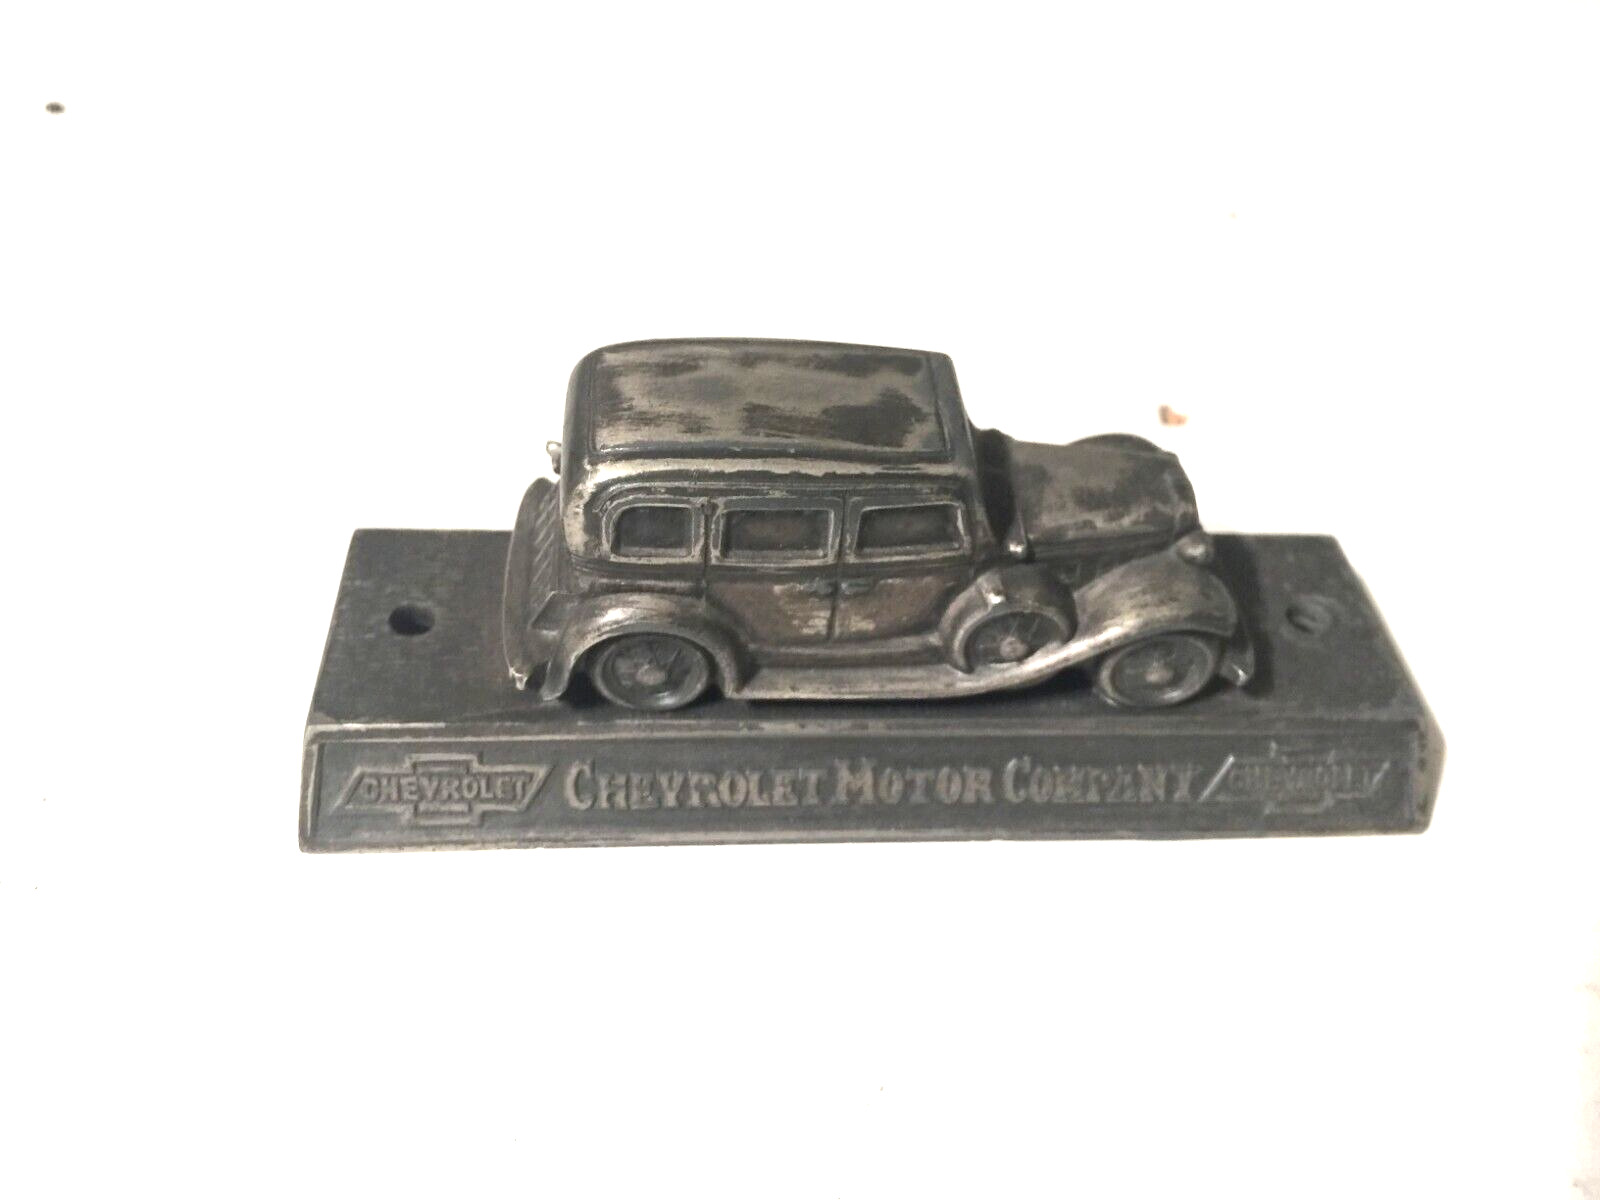 1932 Chevrolet Motor Company paper weight original rare